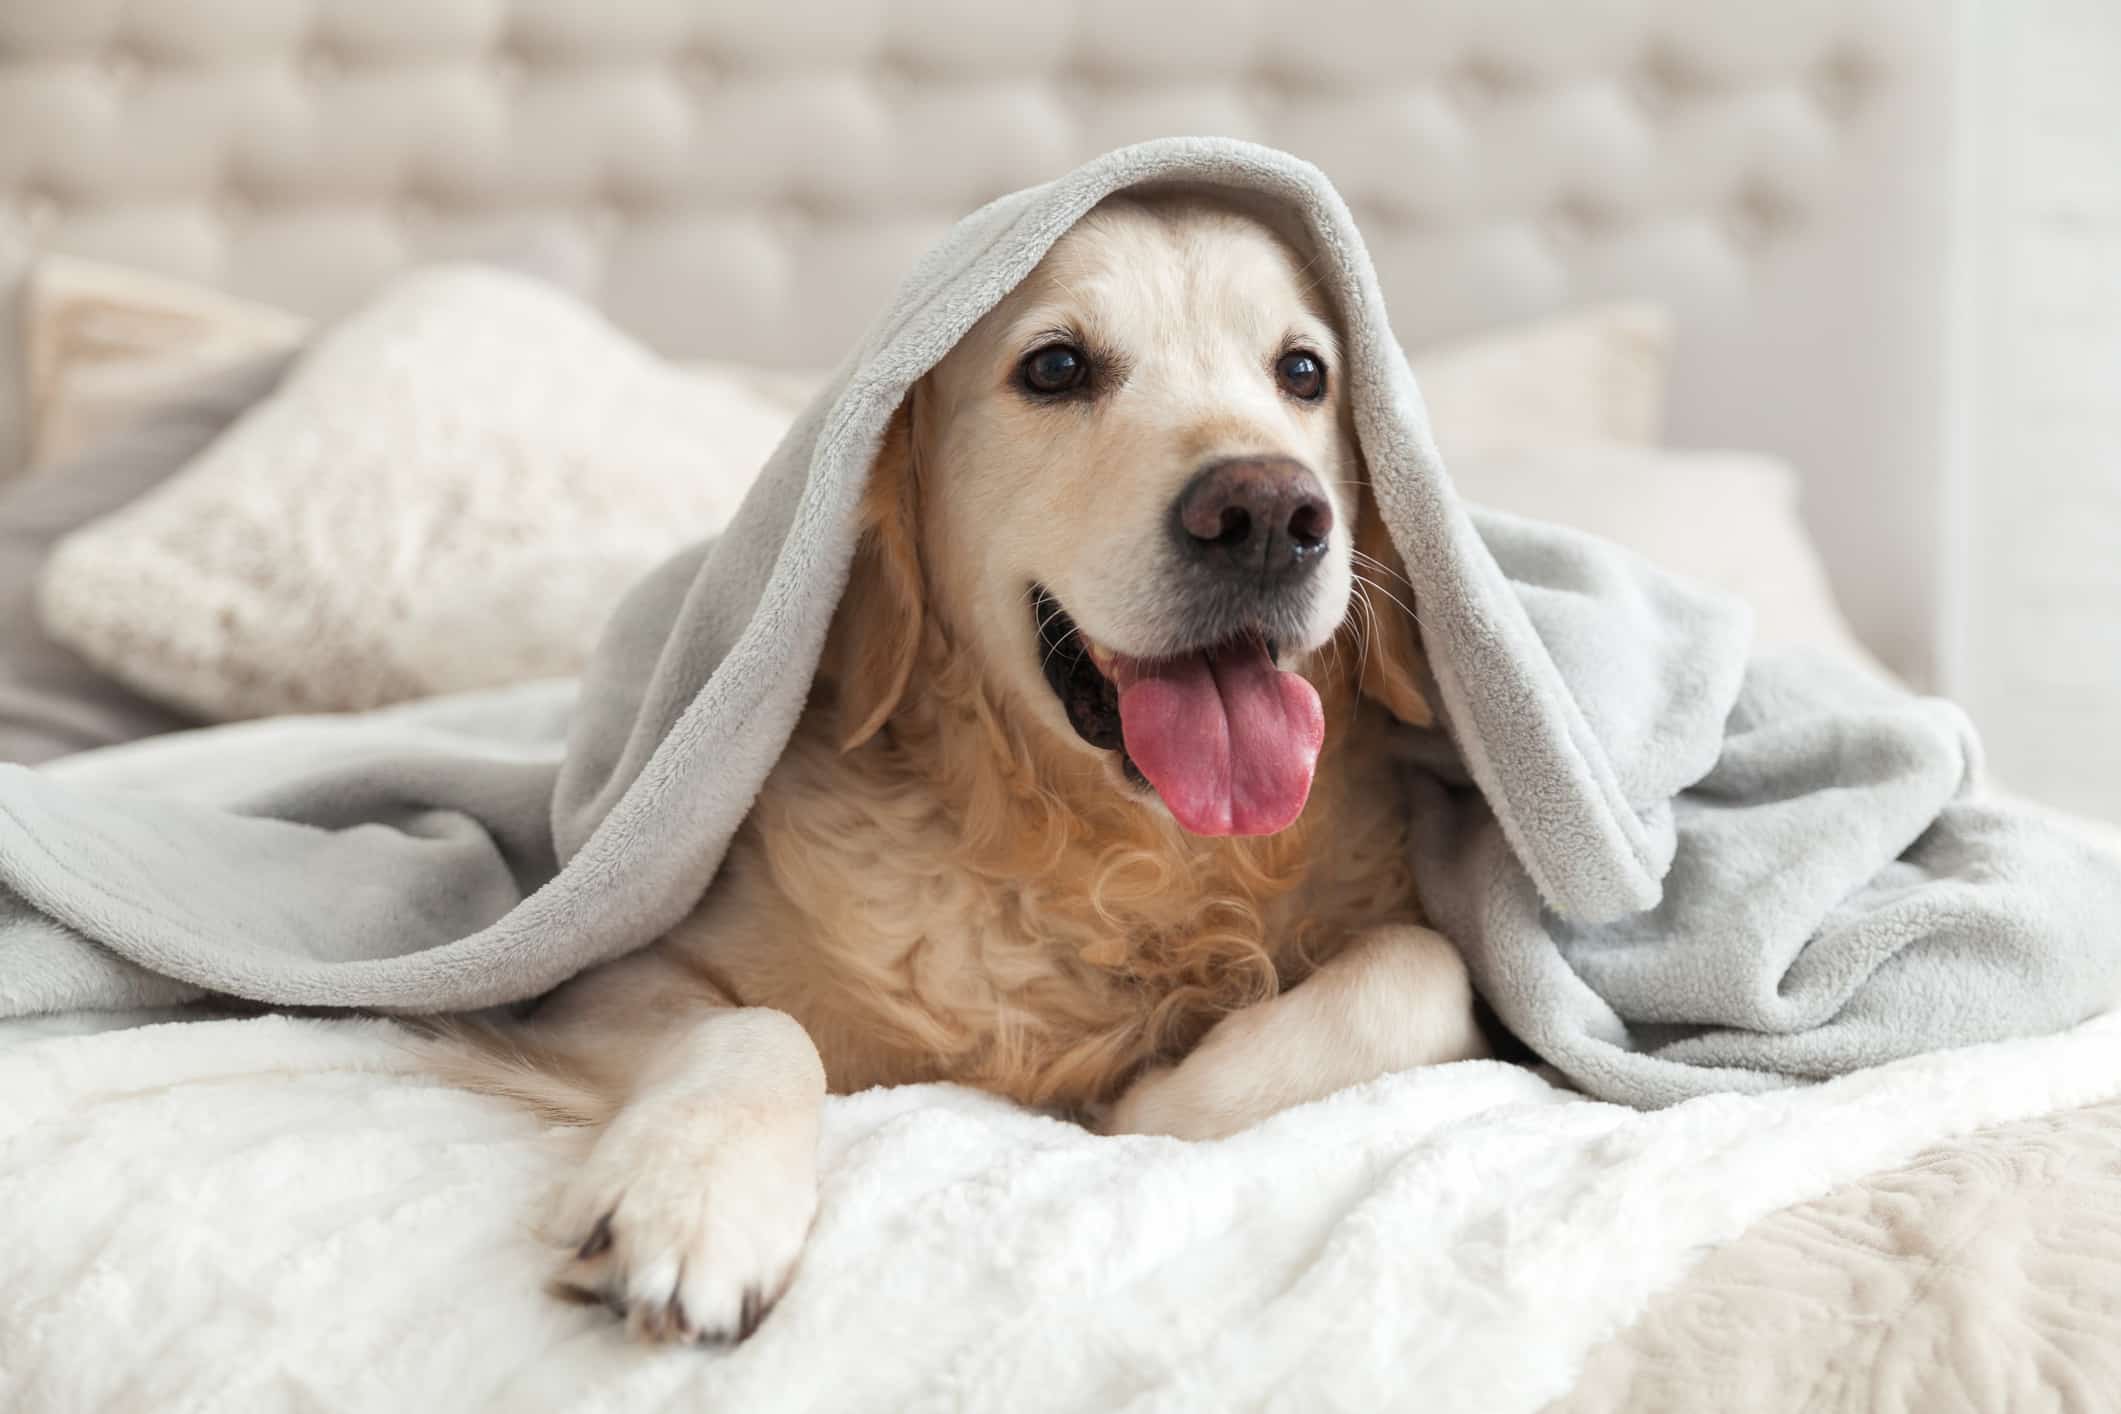 pet inside home under a blanket